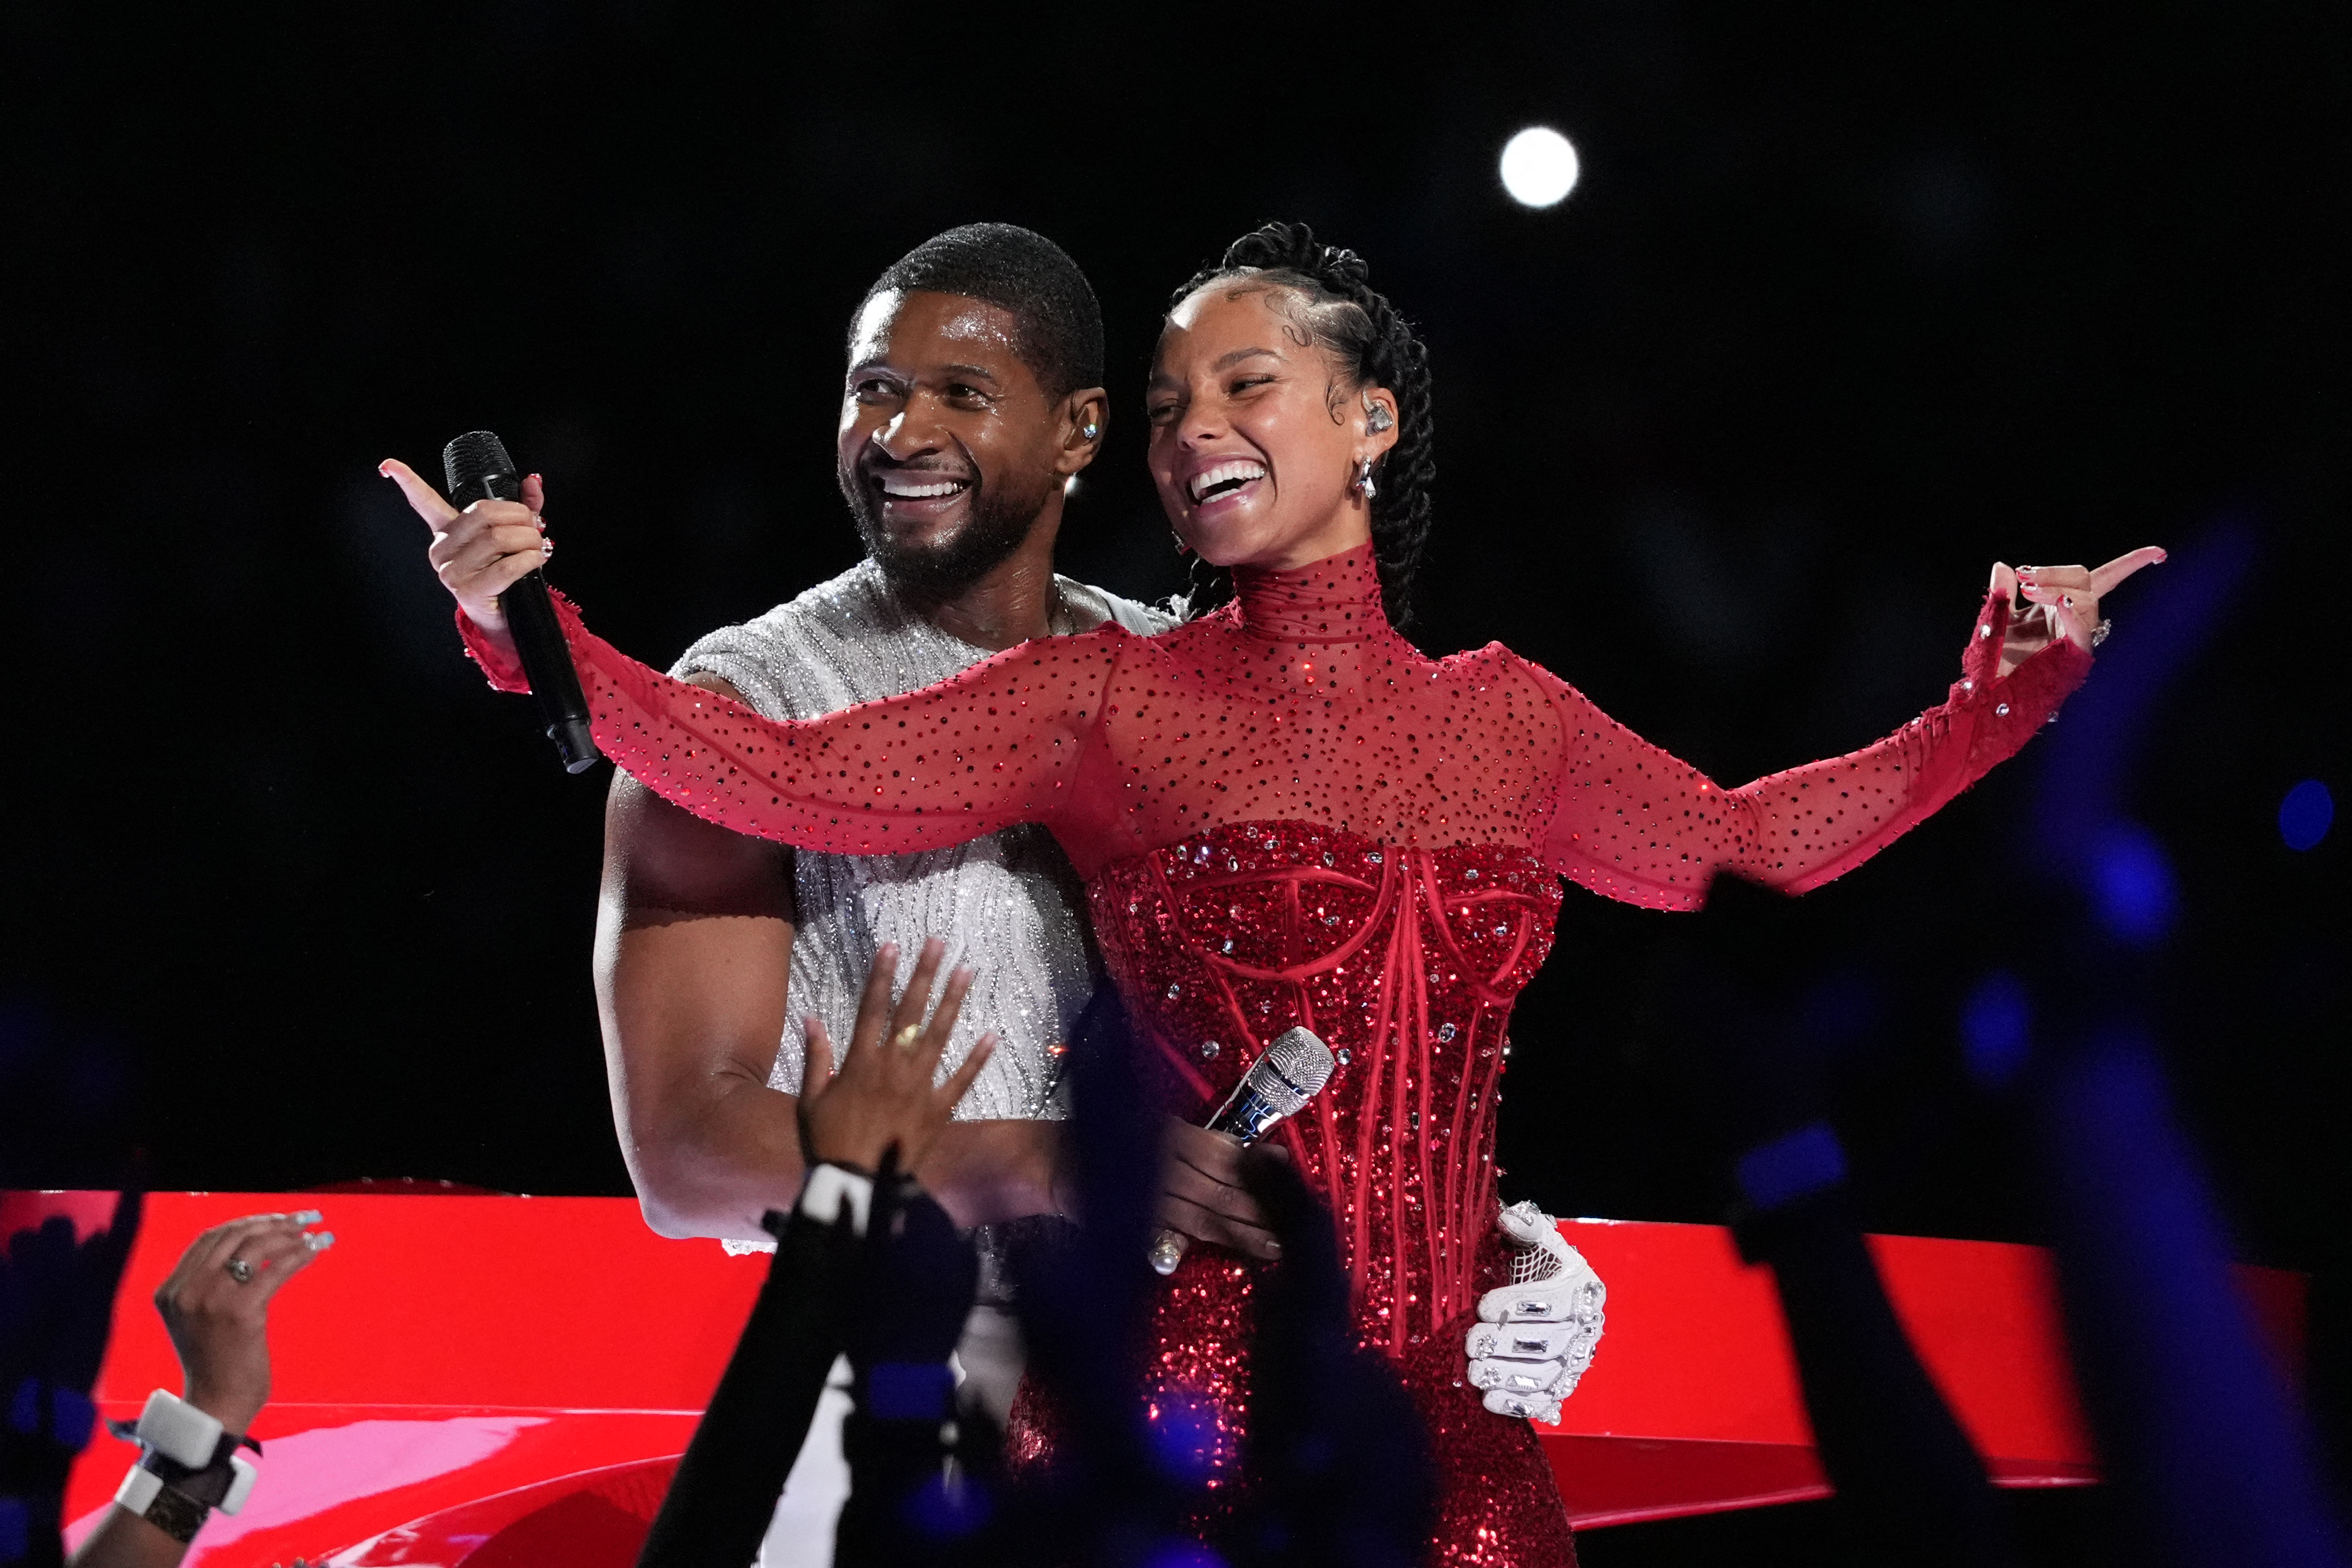 Trotz der technischen Details hatte Usher mit Alicia Keys und Ludacris eine großartige Leistung